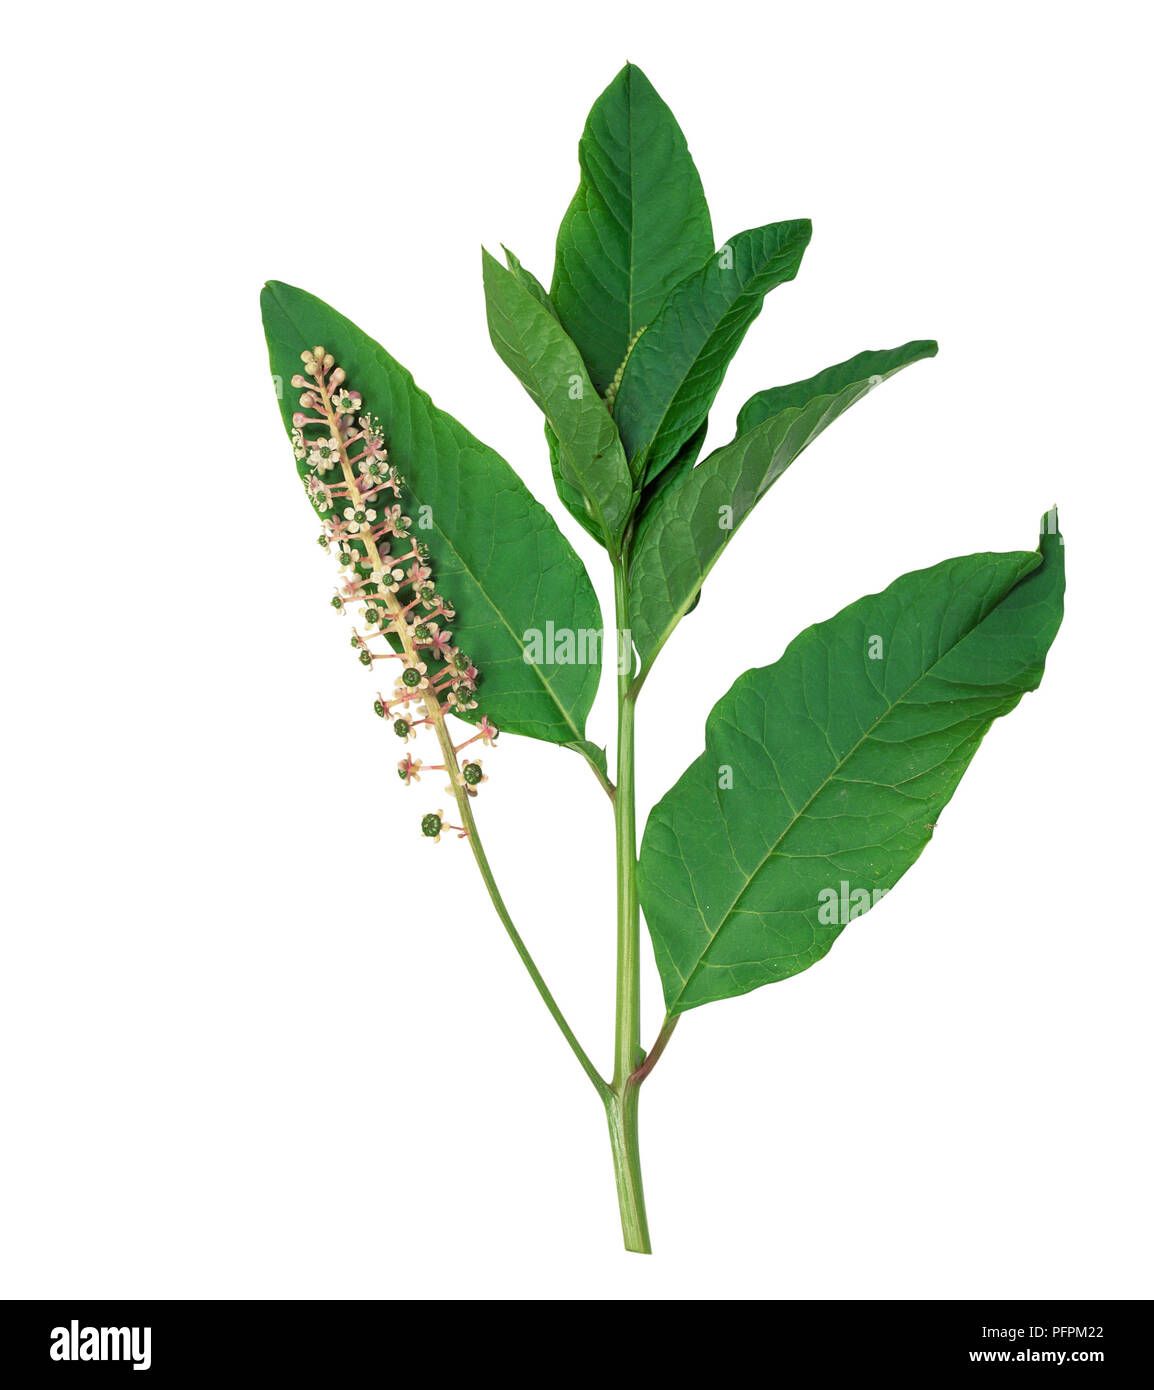 Phytolacca americana (American pokeweed), fruchtkörper Stiel mit Grüne unreife Früchte, und Stängel mit Blüten in Trauben und Blätter Stockfoto